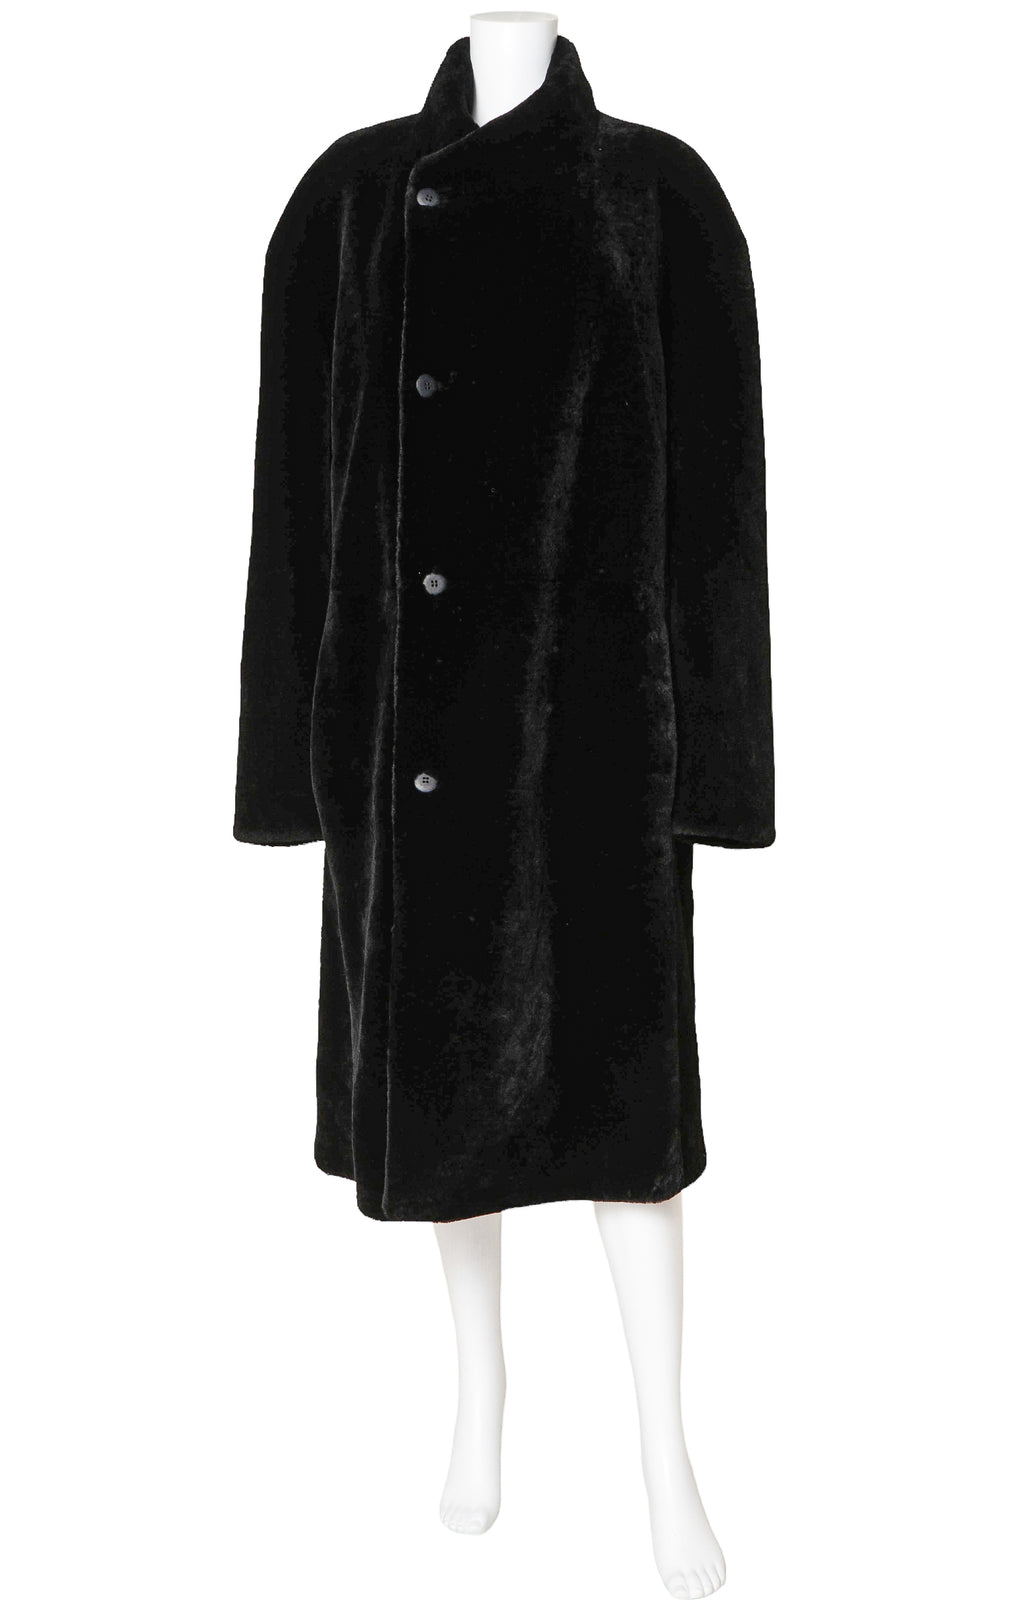 GIORGIO ARMANI (RARE) Coat Size: Men's IT 52 / Comparable to Women's XL